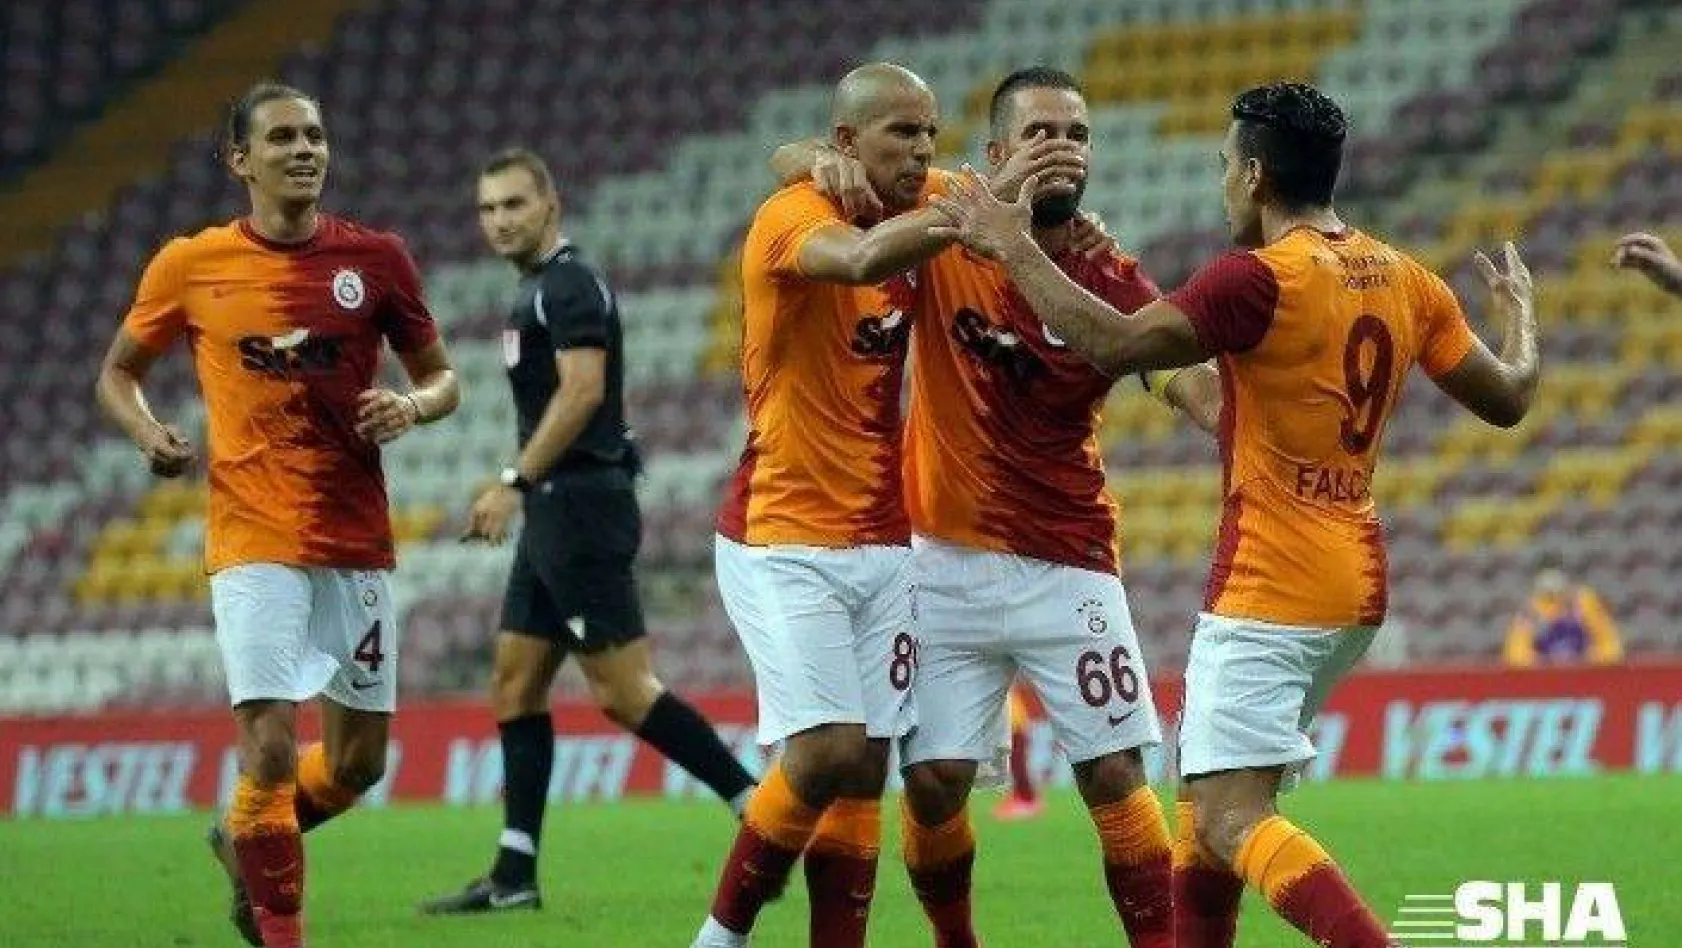 Galatasaray'da sezonun ilk golü Radamel Falcao'dan